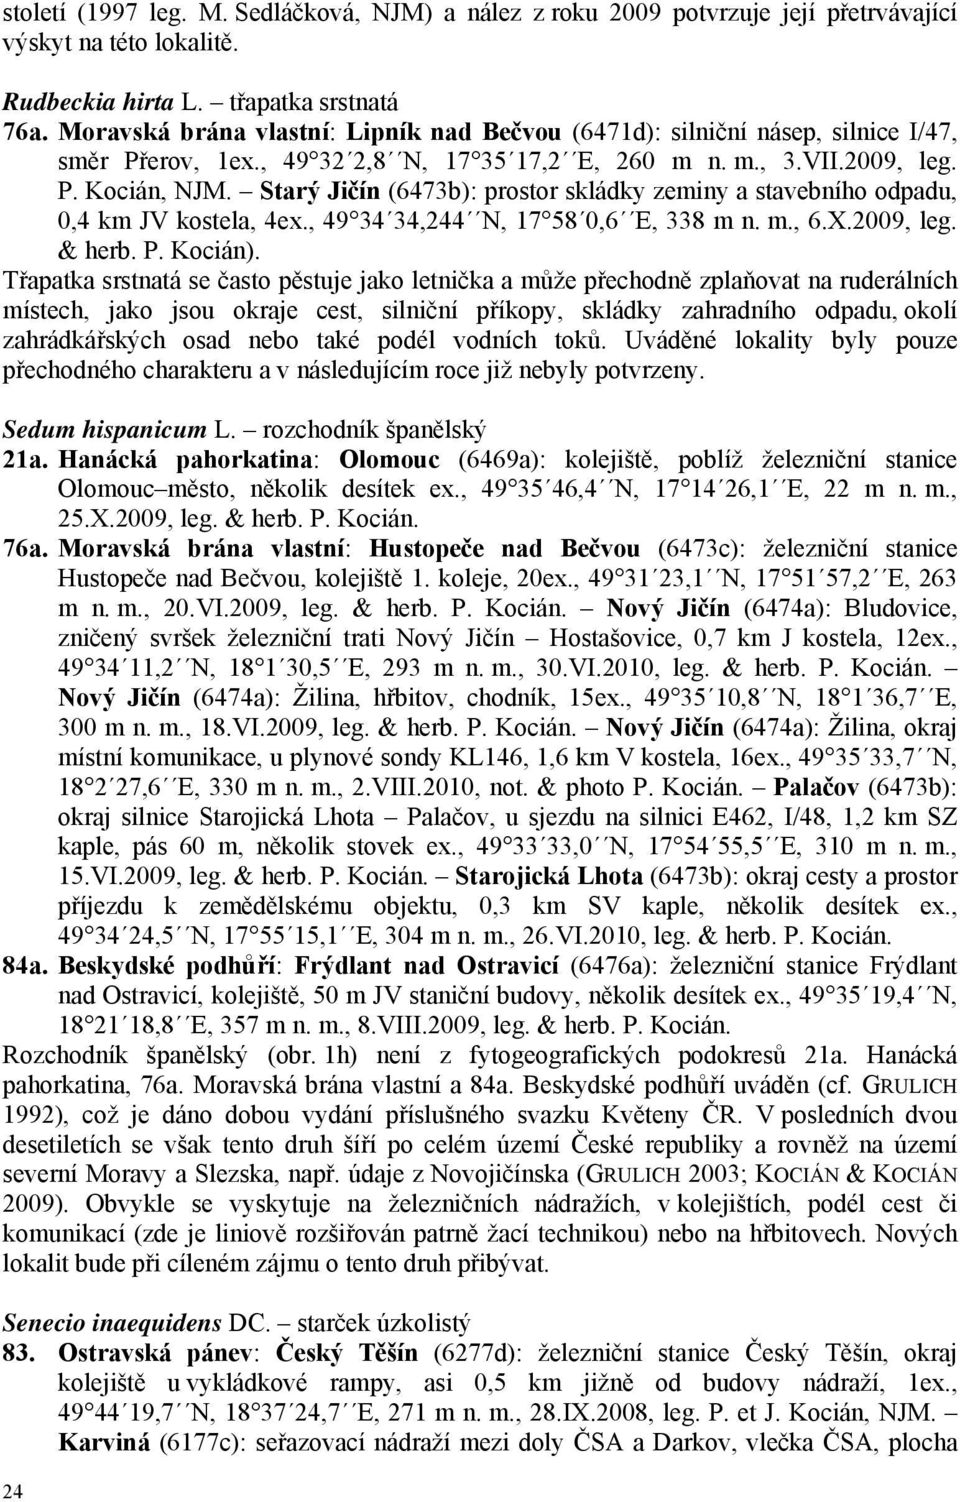 Starý Jičín (6473b): prostor skládky zeminy a stavebního odpadu, 0,4 km JV kostela, 4ex., 49 34 34,244 N, 17 58 0,6 E, 338 m n. m., 6.X.2009, leg. & herb. P. Kocián).